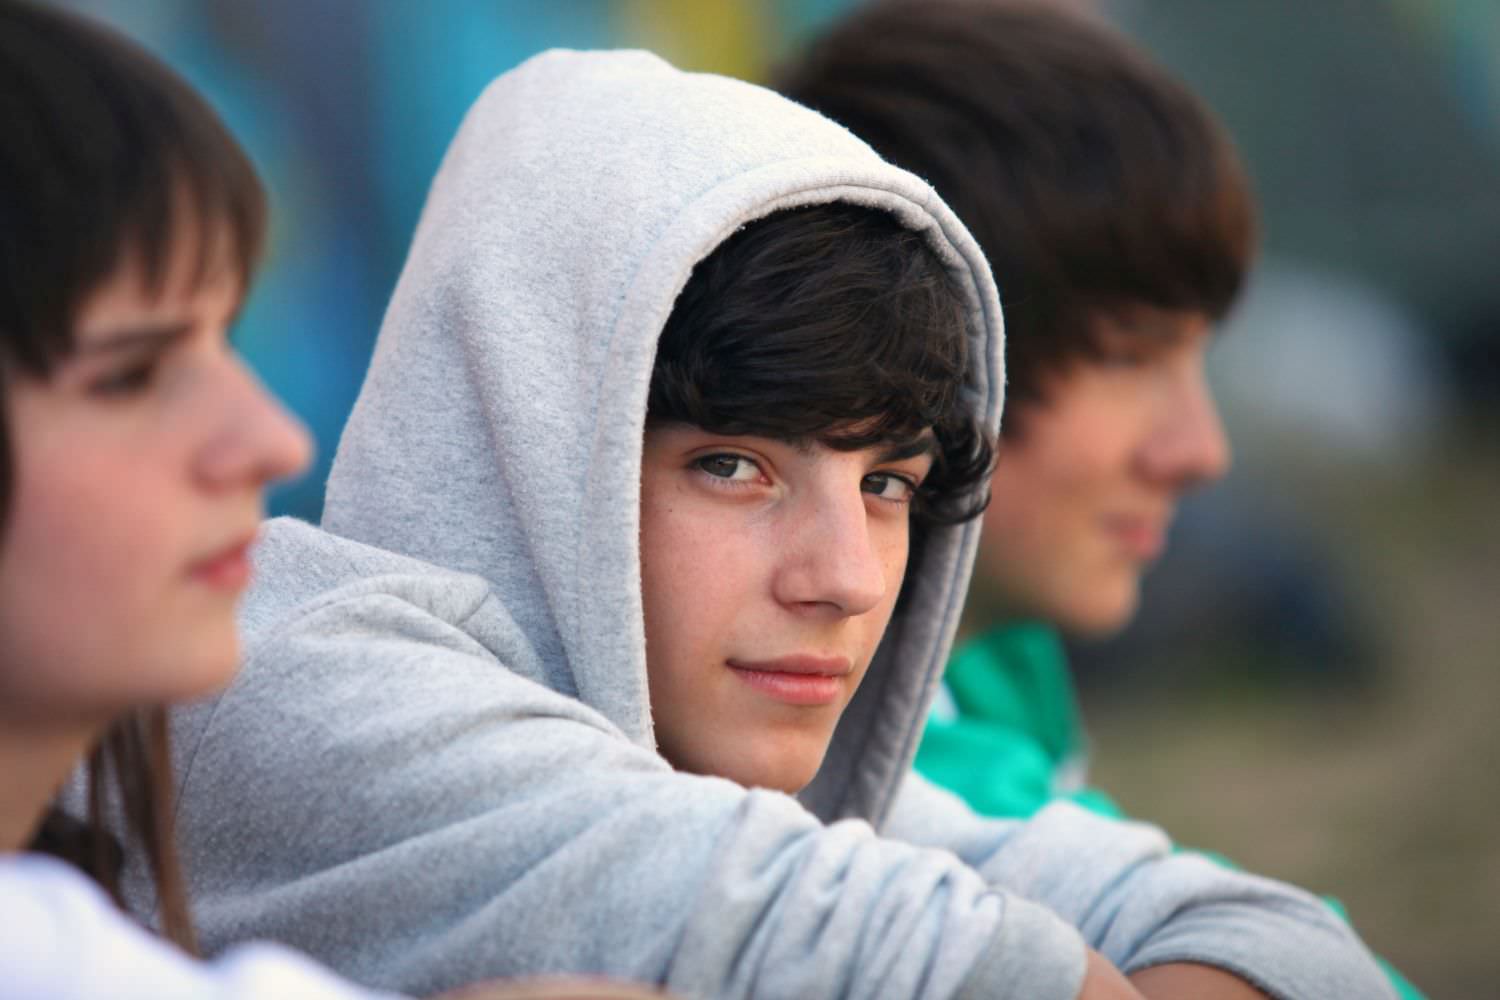 Bild zeigt: Portrait eines jungen Teenager mit Kapuzenpullover